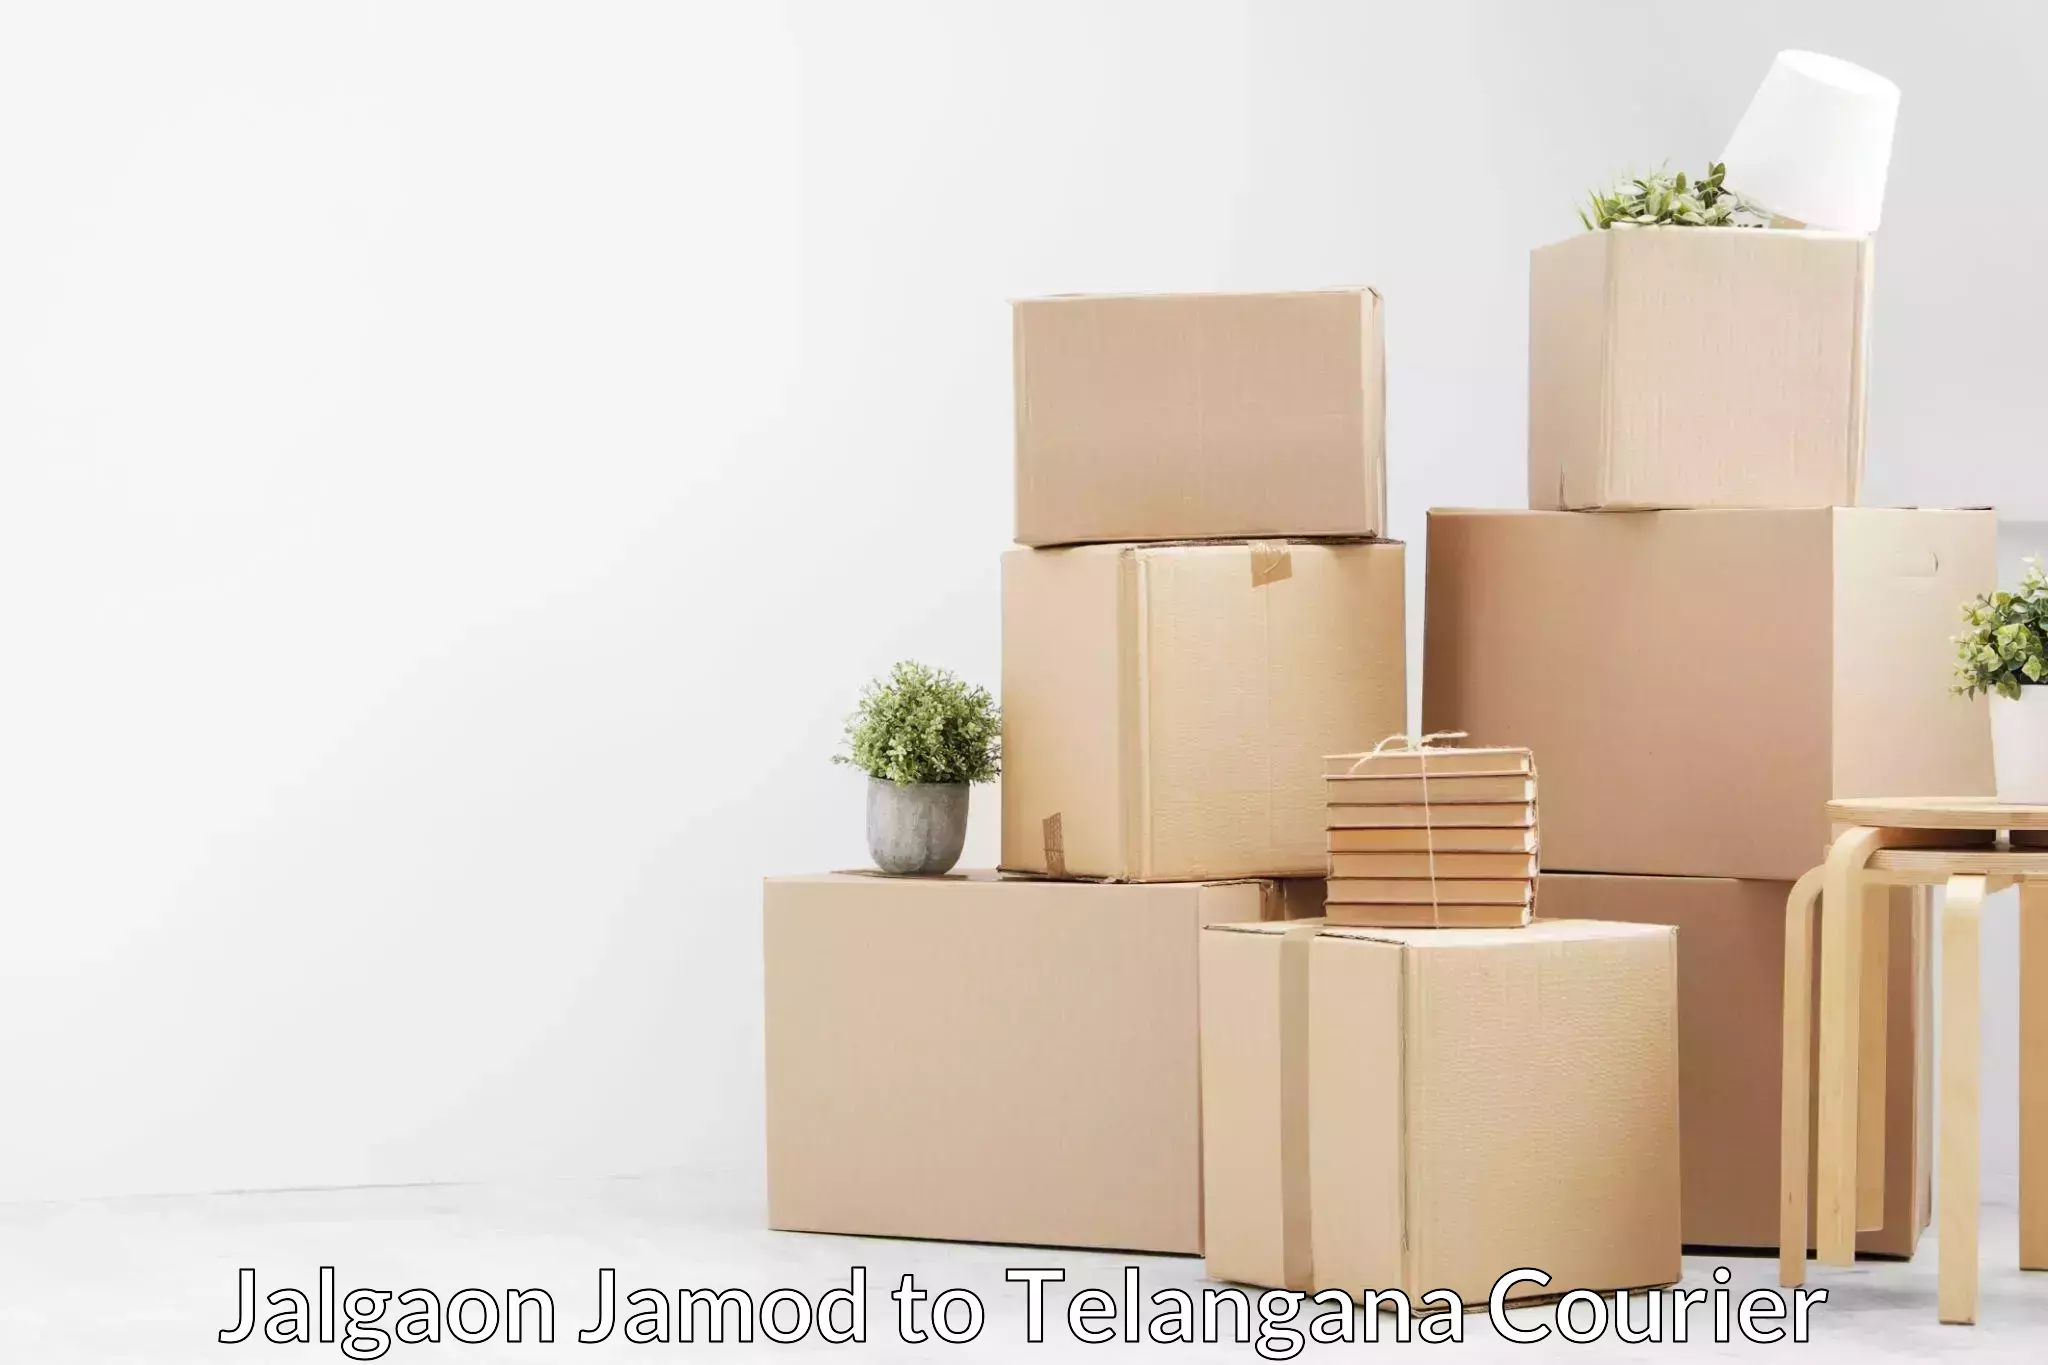 Household goods transport service Jalgaon Jamod to Pargi